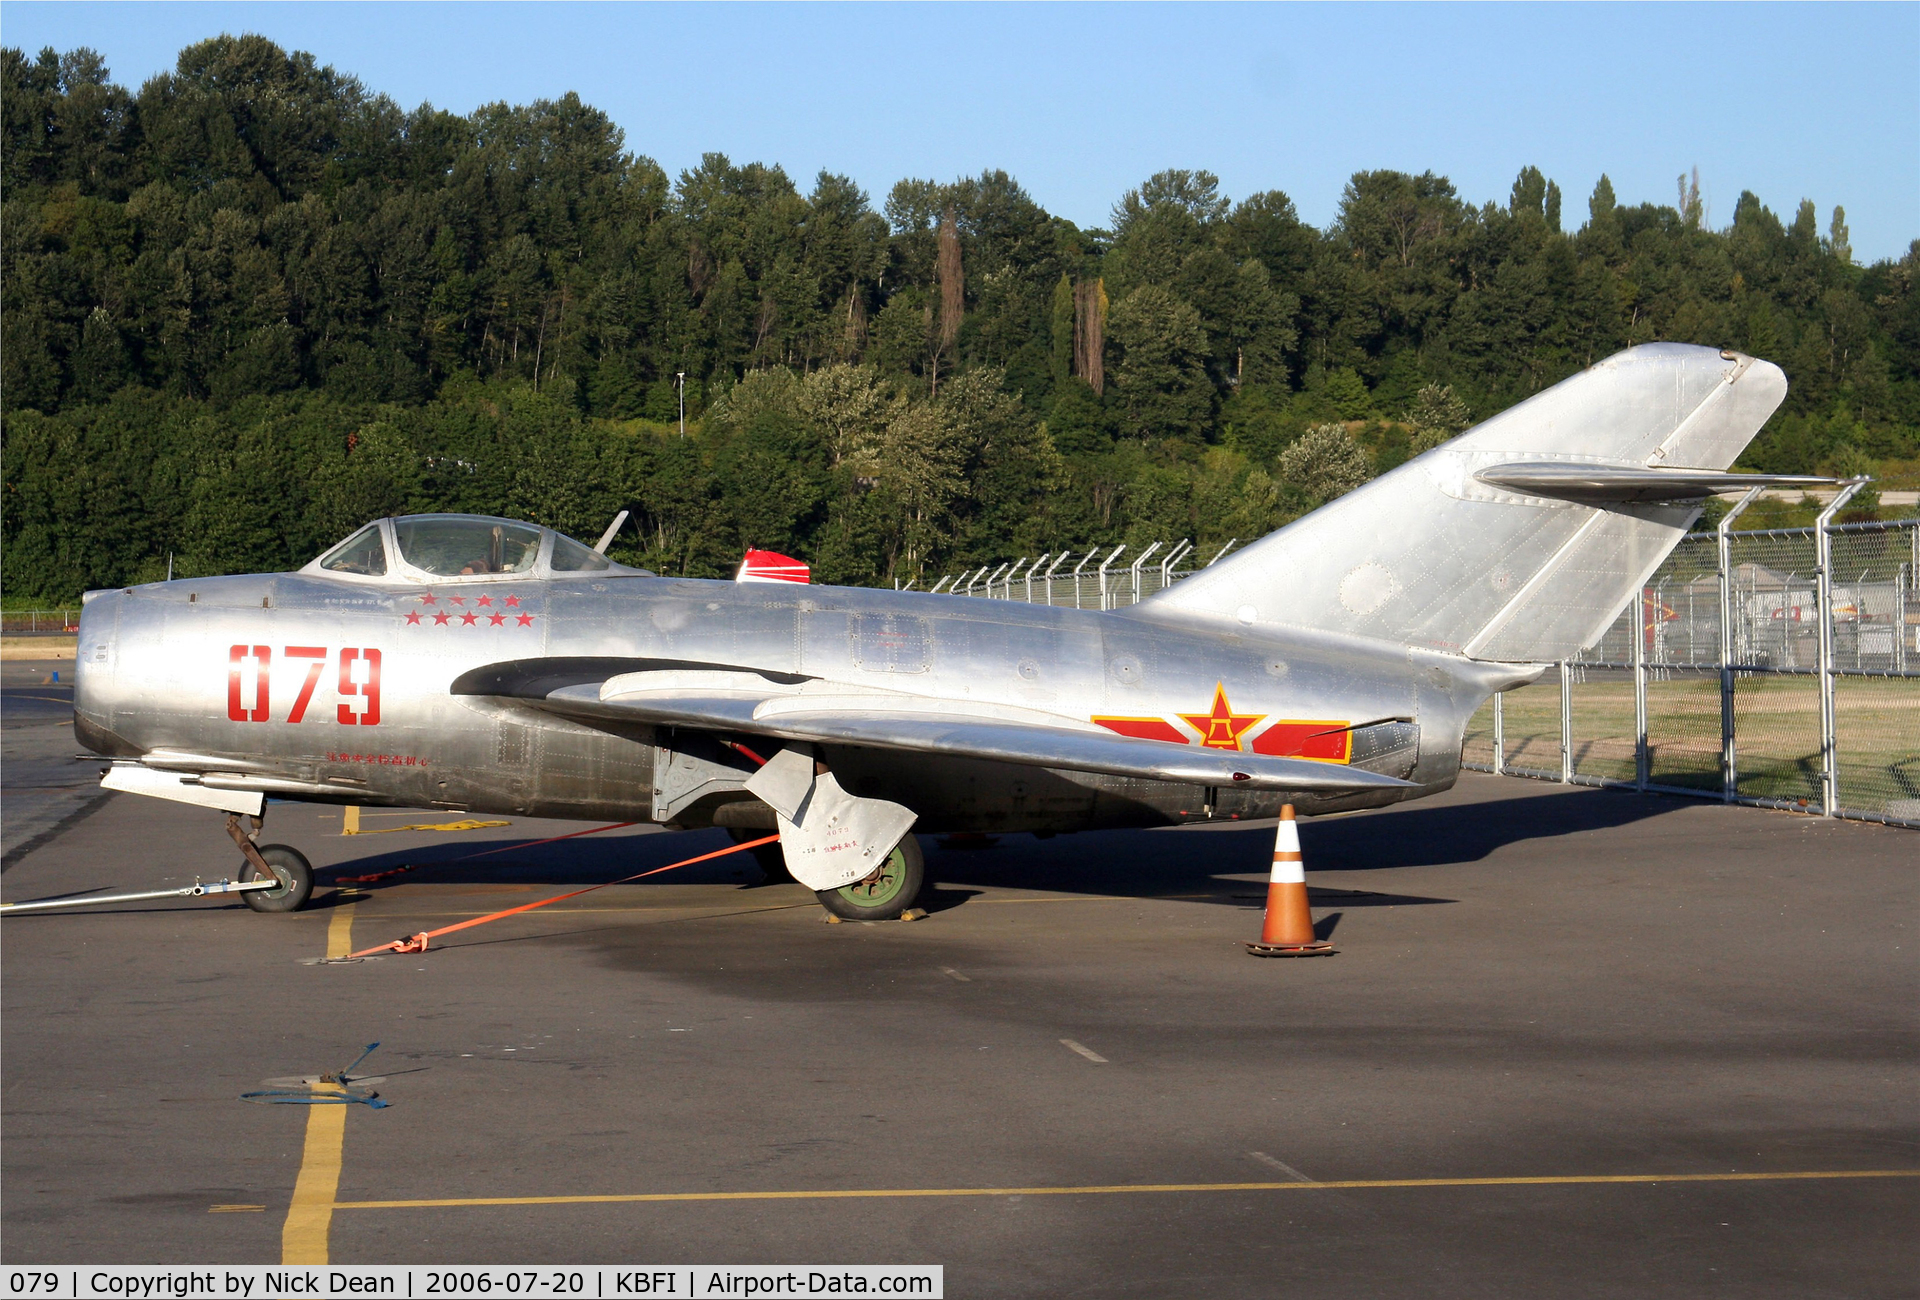 079, Mikoyan-Gurevich MiG-15bis C/N 124079, KBFI